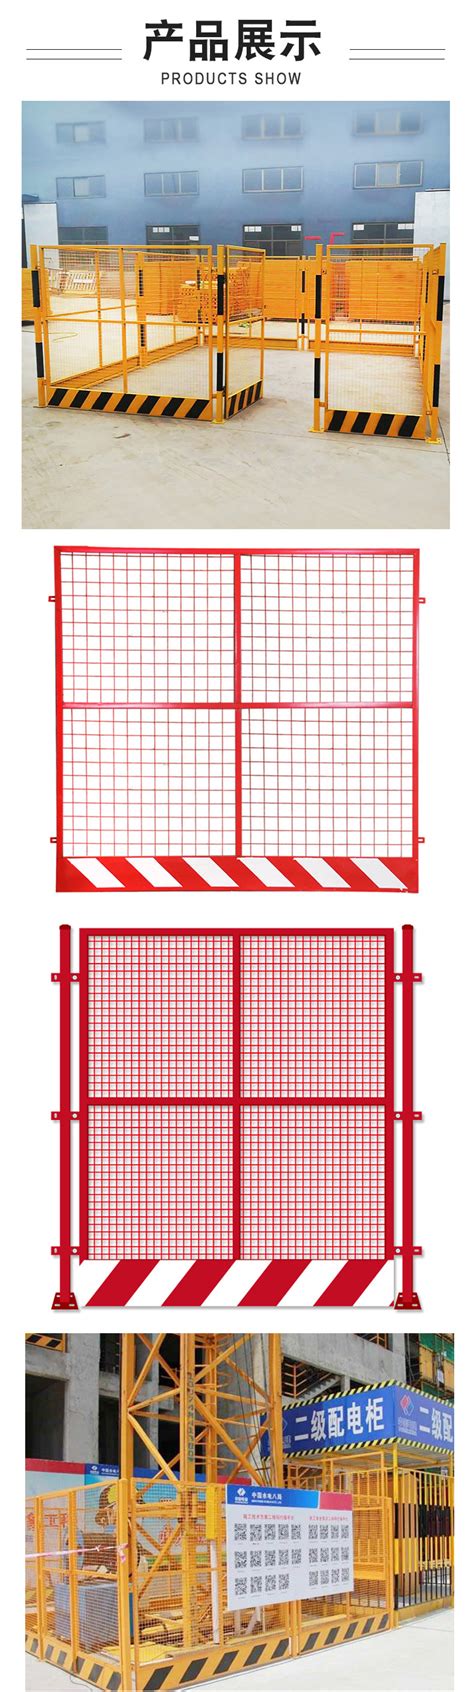 2019年塔吊护栏百度图片高度要求建筑护栏图集工程建设防护栏杆工地设备护栏围栏厂家